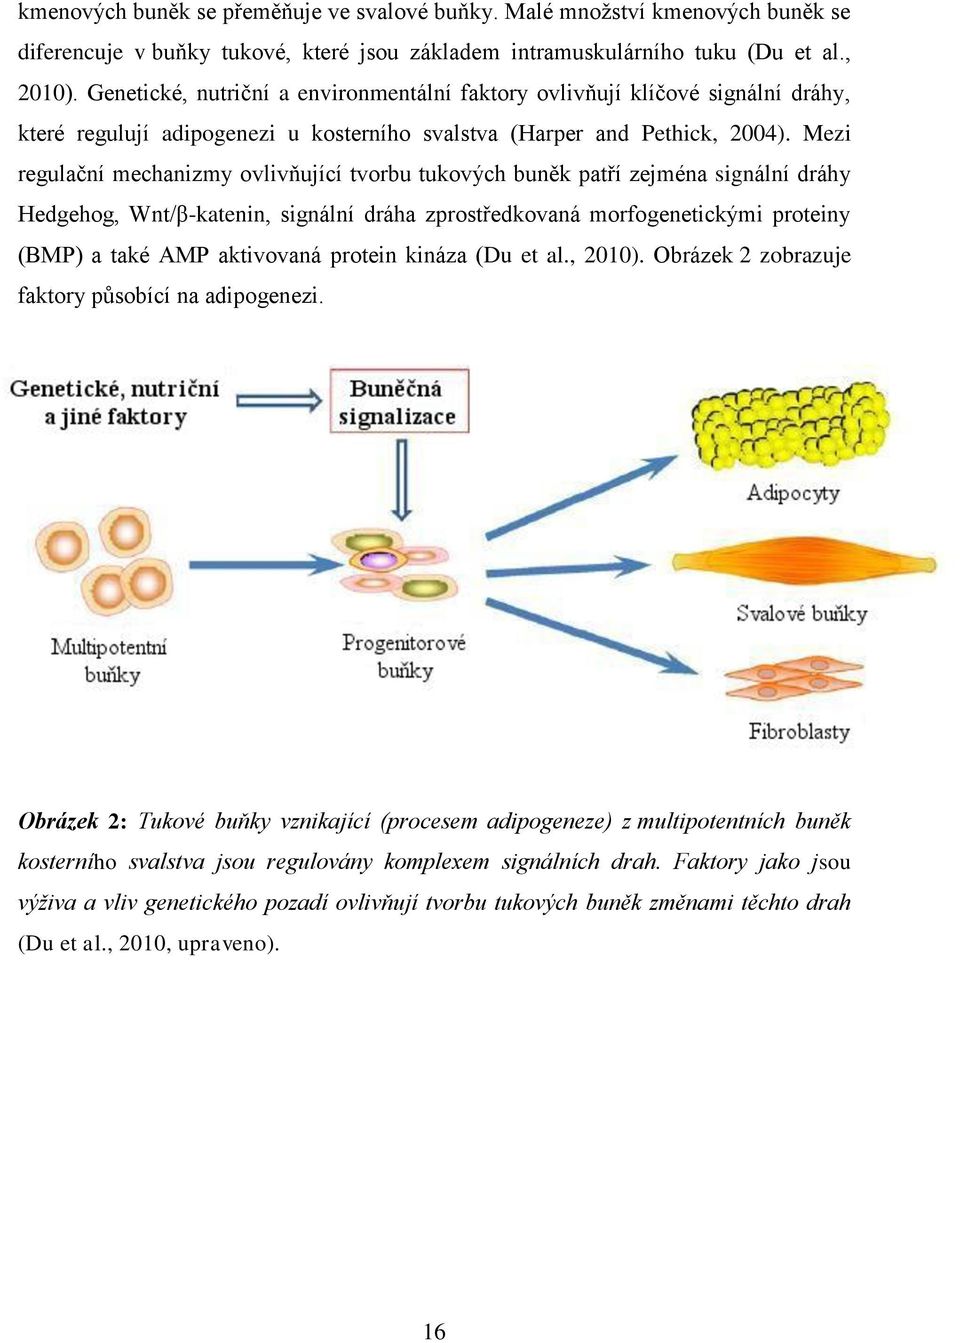 Mezi regulační mechanizmy ovlivňující tvorbu tukových buněk patří zejména signální dráhy Hedgehog, Wnt/β-katenin, signální dráha zprostředkovaná morfogenetickými proteiny (BMP) a také AMP aktivovaná